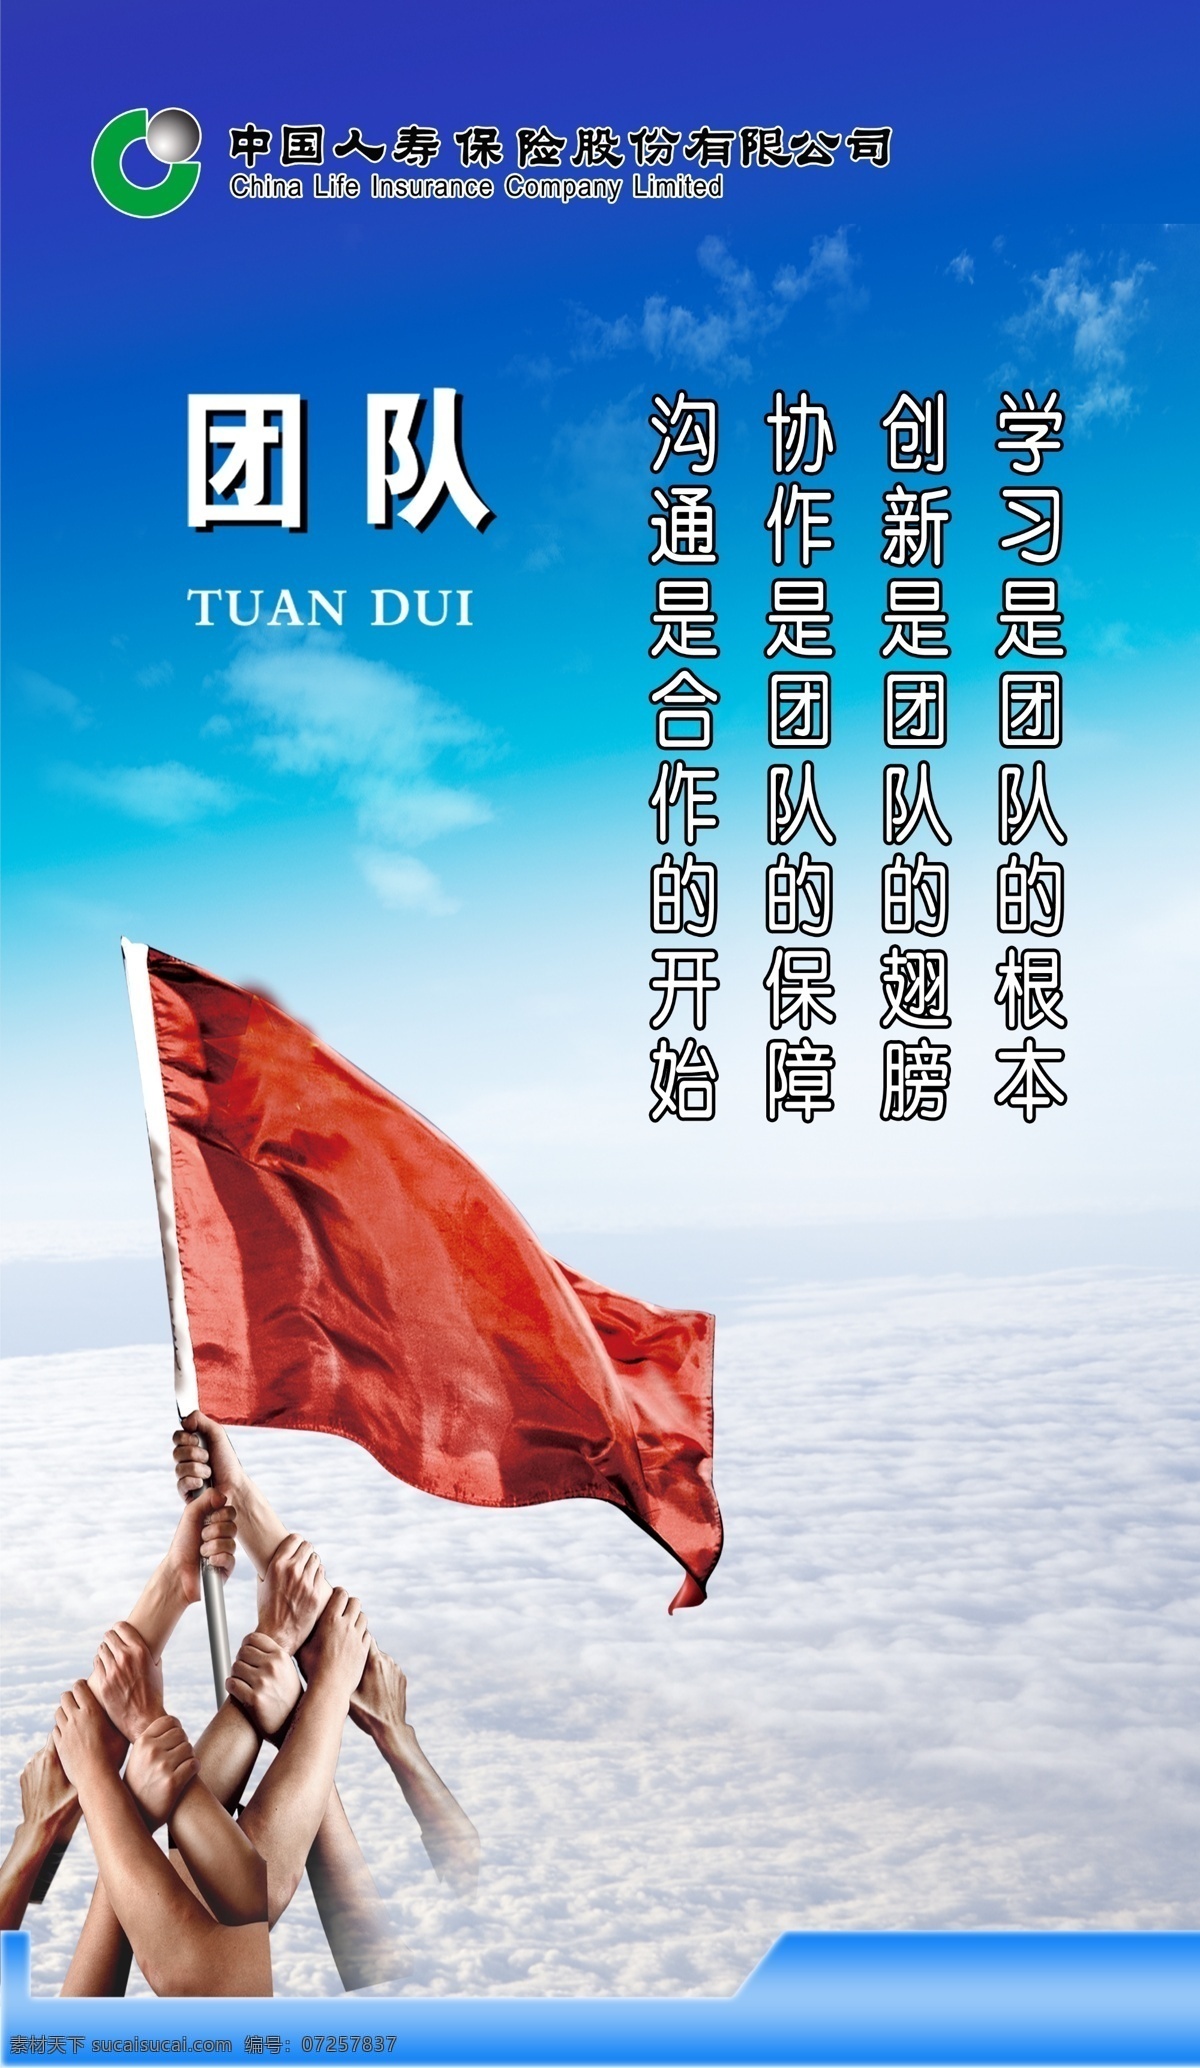 中国人寿 保险 团队 齐心协力 举旗